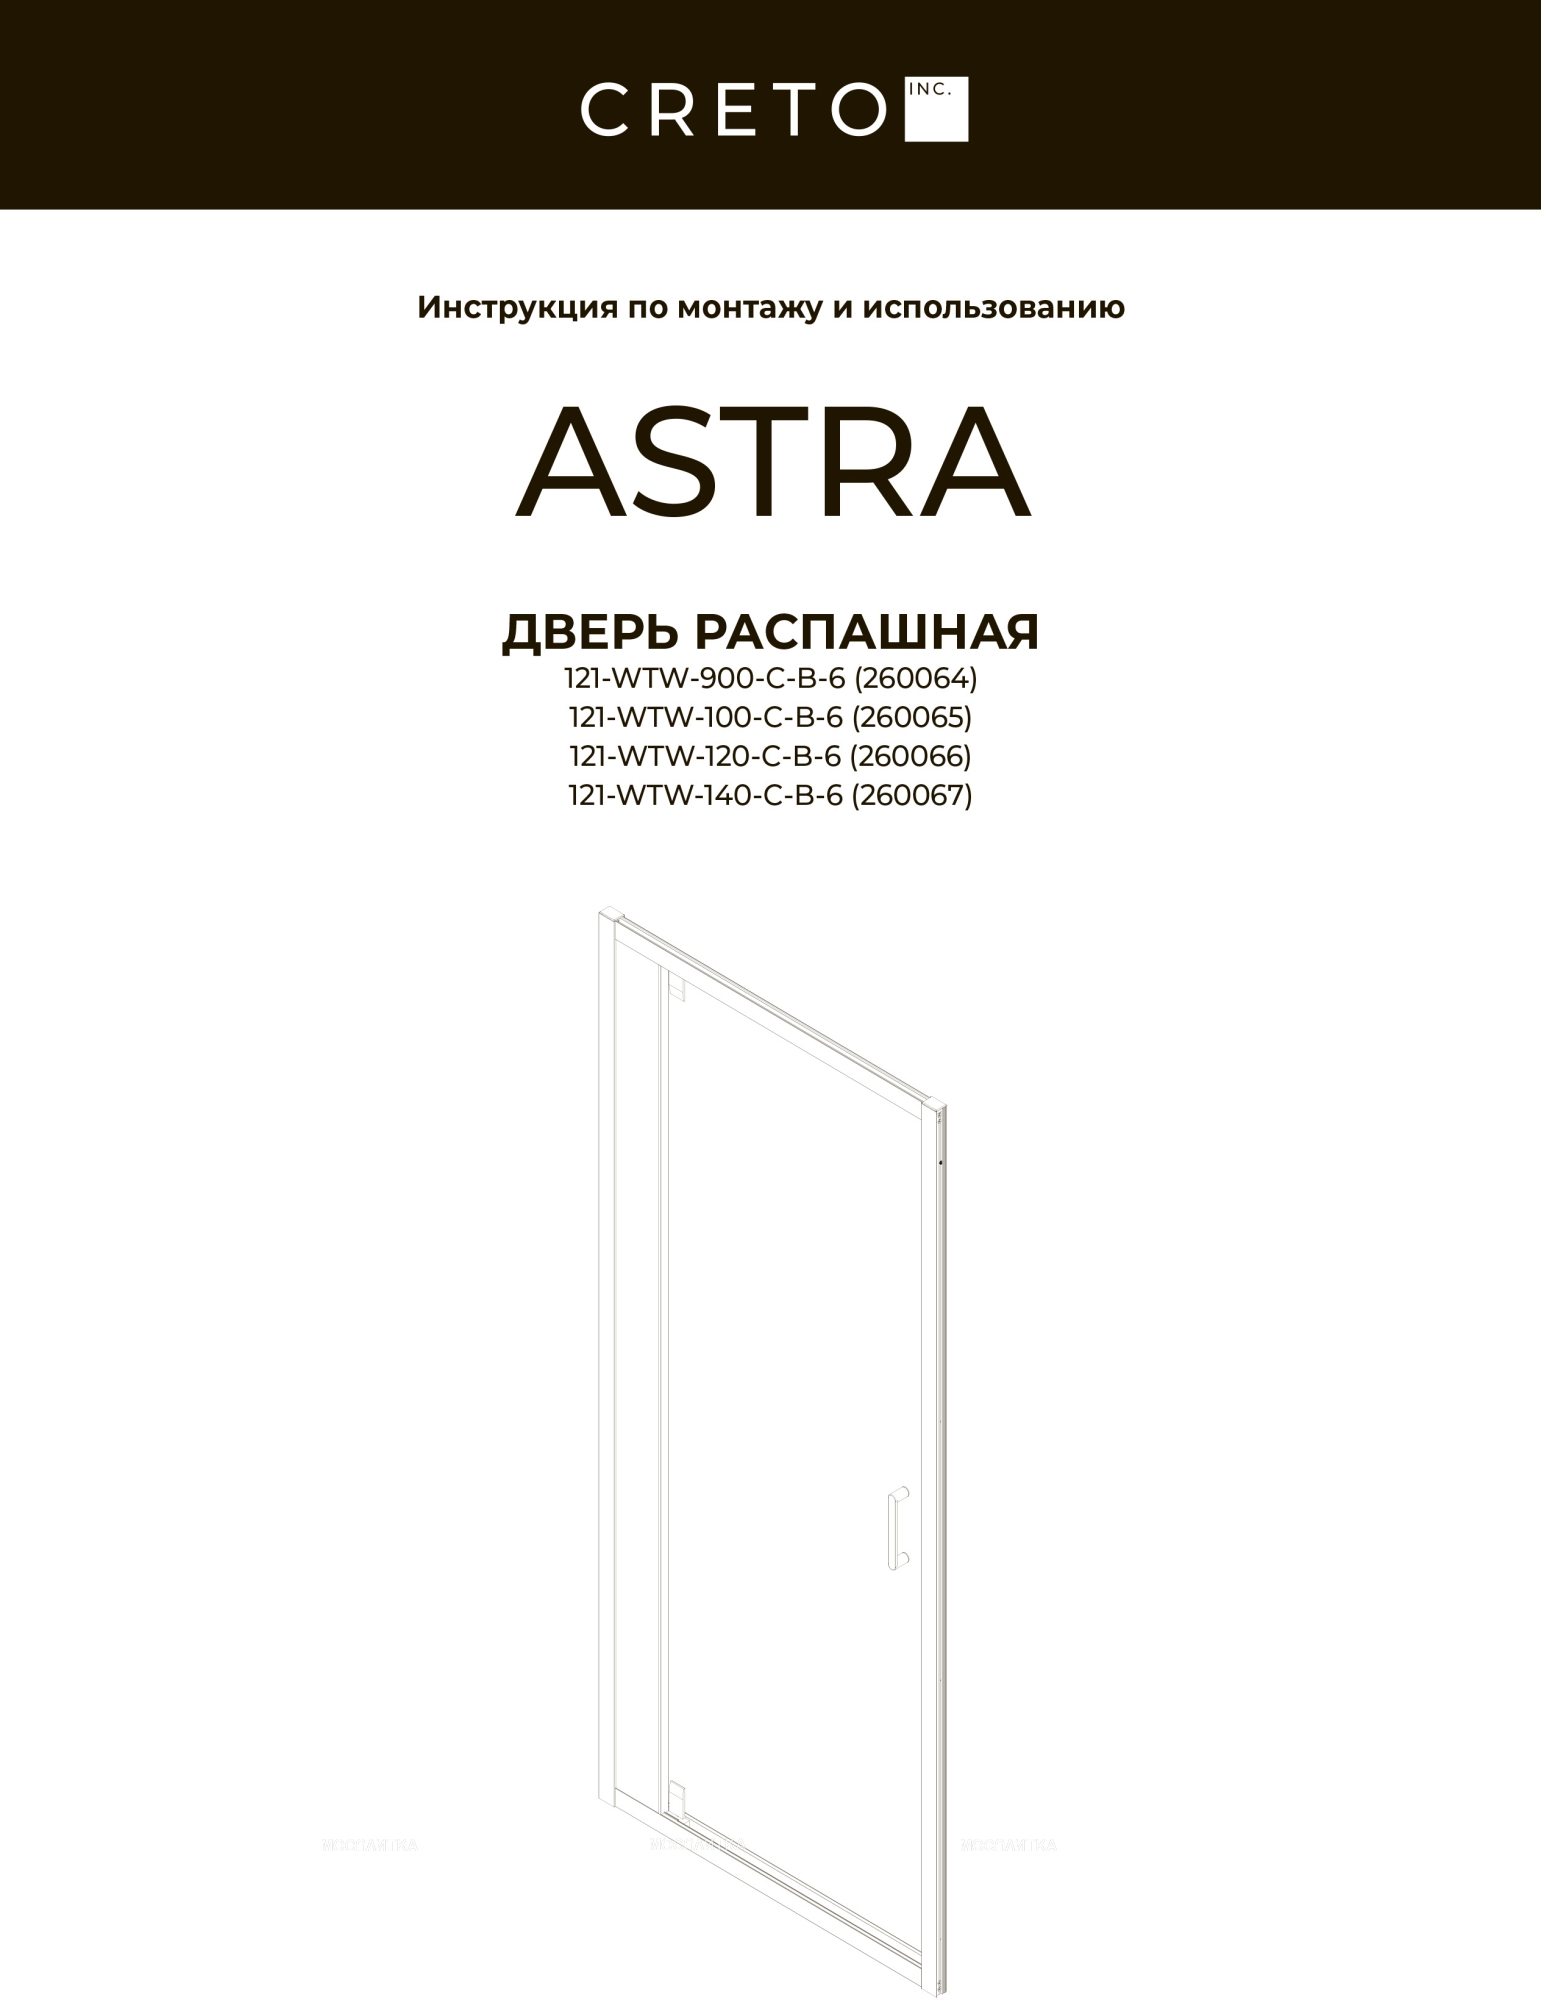 Душевой уголок Creto Astra стекло прозрачное профиль черный 140х70 см, 121-WTW-140-C-B-6 + 121-SP-700-C-B-6 - изображение 4